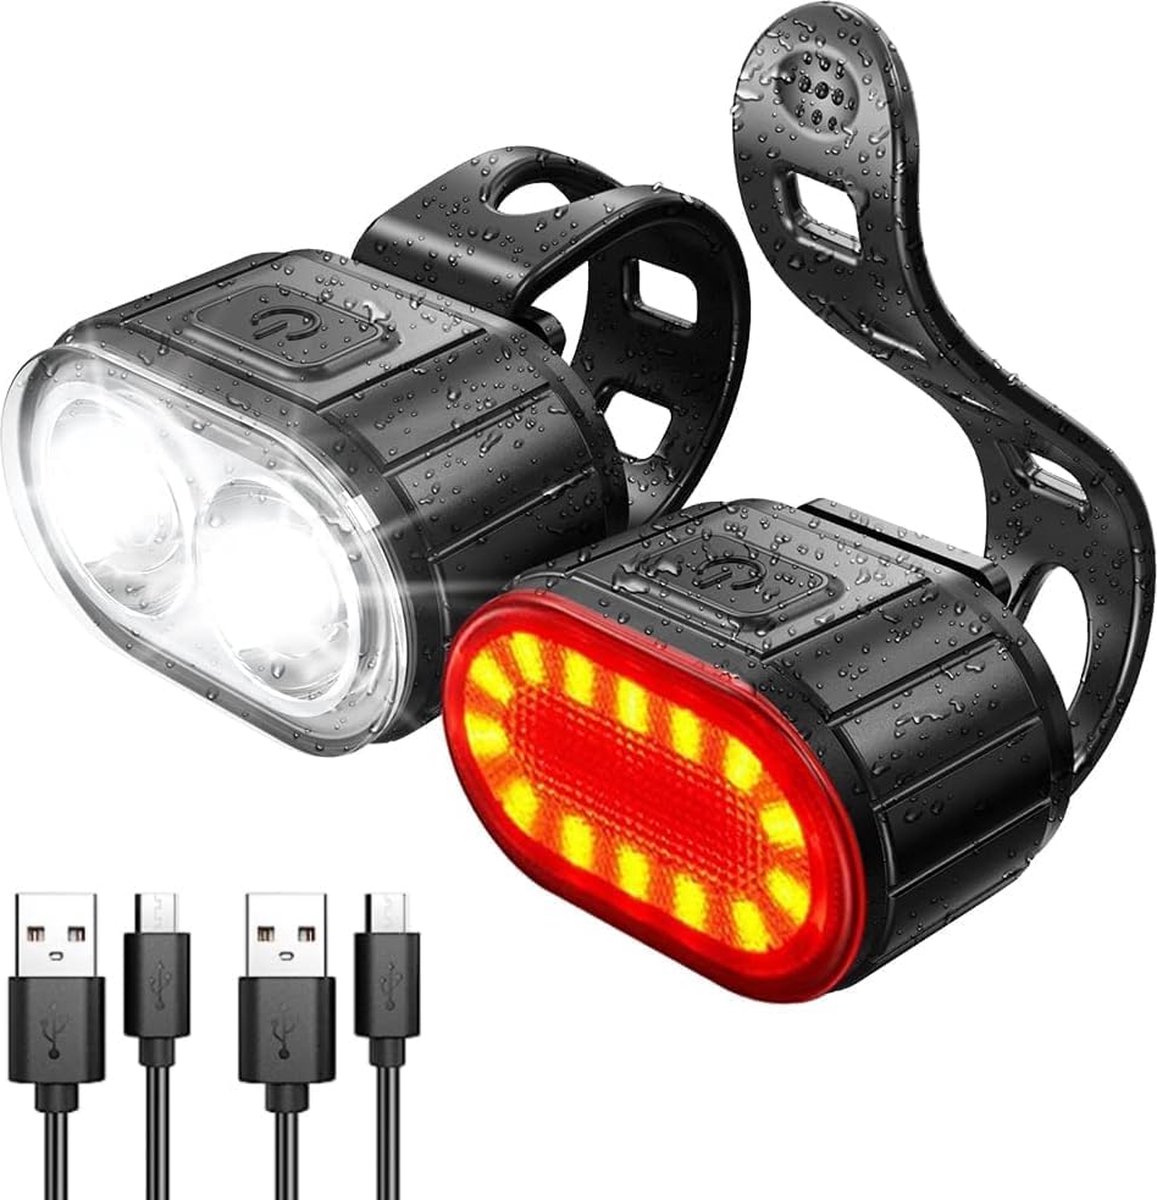 Oplaadbare Fietslampjes Set - Waterdicht en Modieus Design - USB-Oplaadbaar - Veiligheidslampen voor Fietsers - Geschikt voor Stads- en Mountainbikes